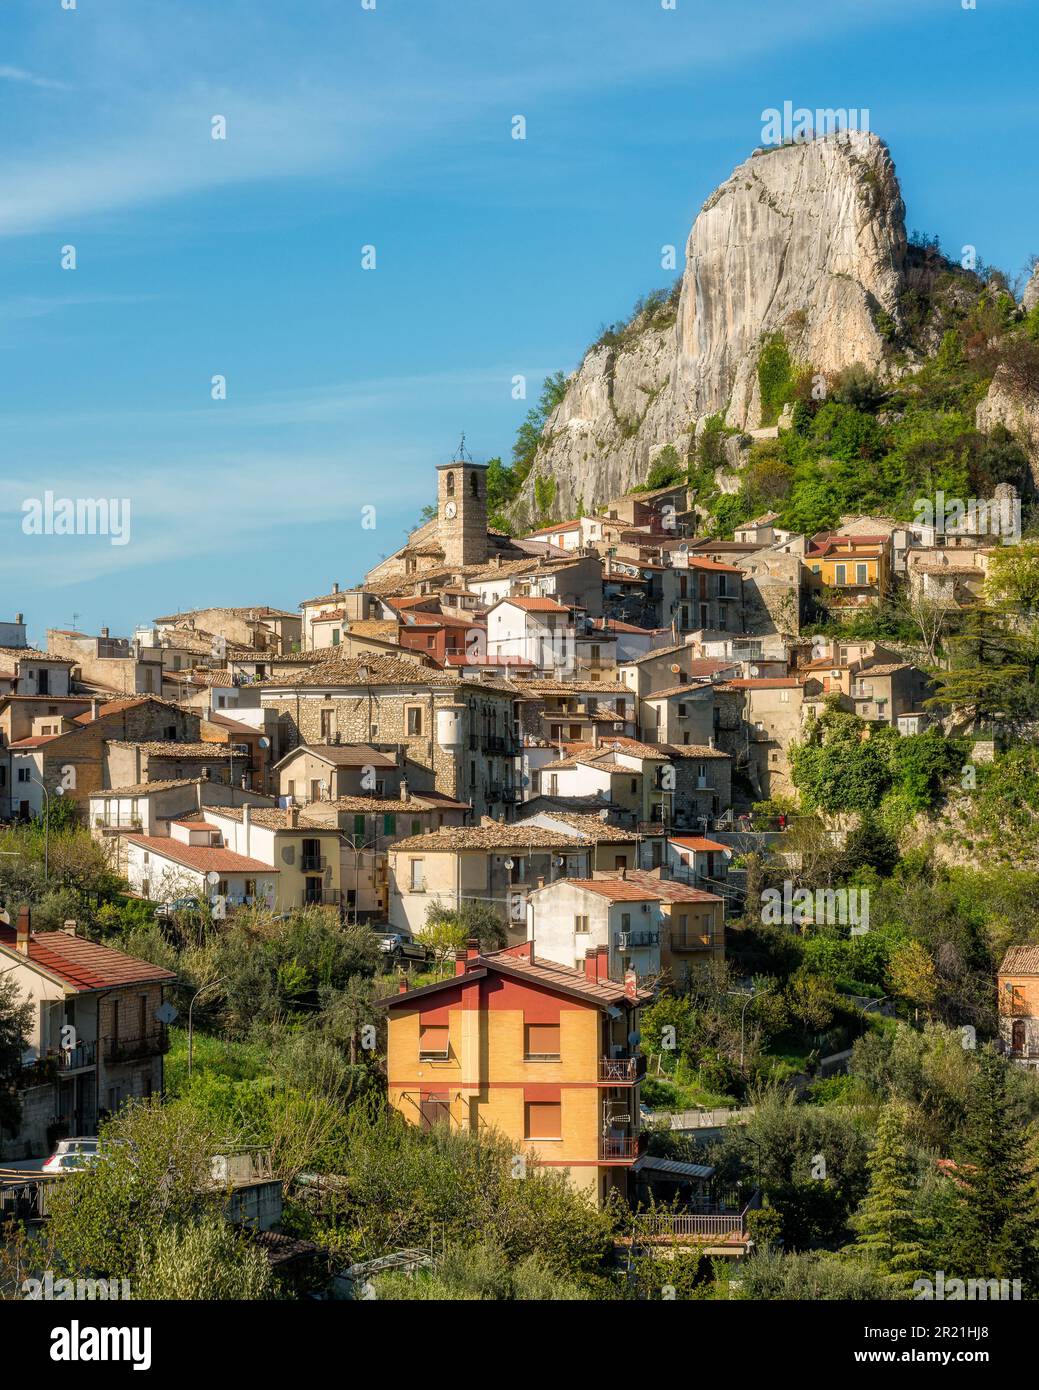 Vue panoramique sur Pennadomo, beau village de la province de Chieti, Abruzzes, centre de l'Italie. Banque D'Images